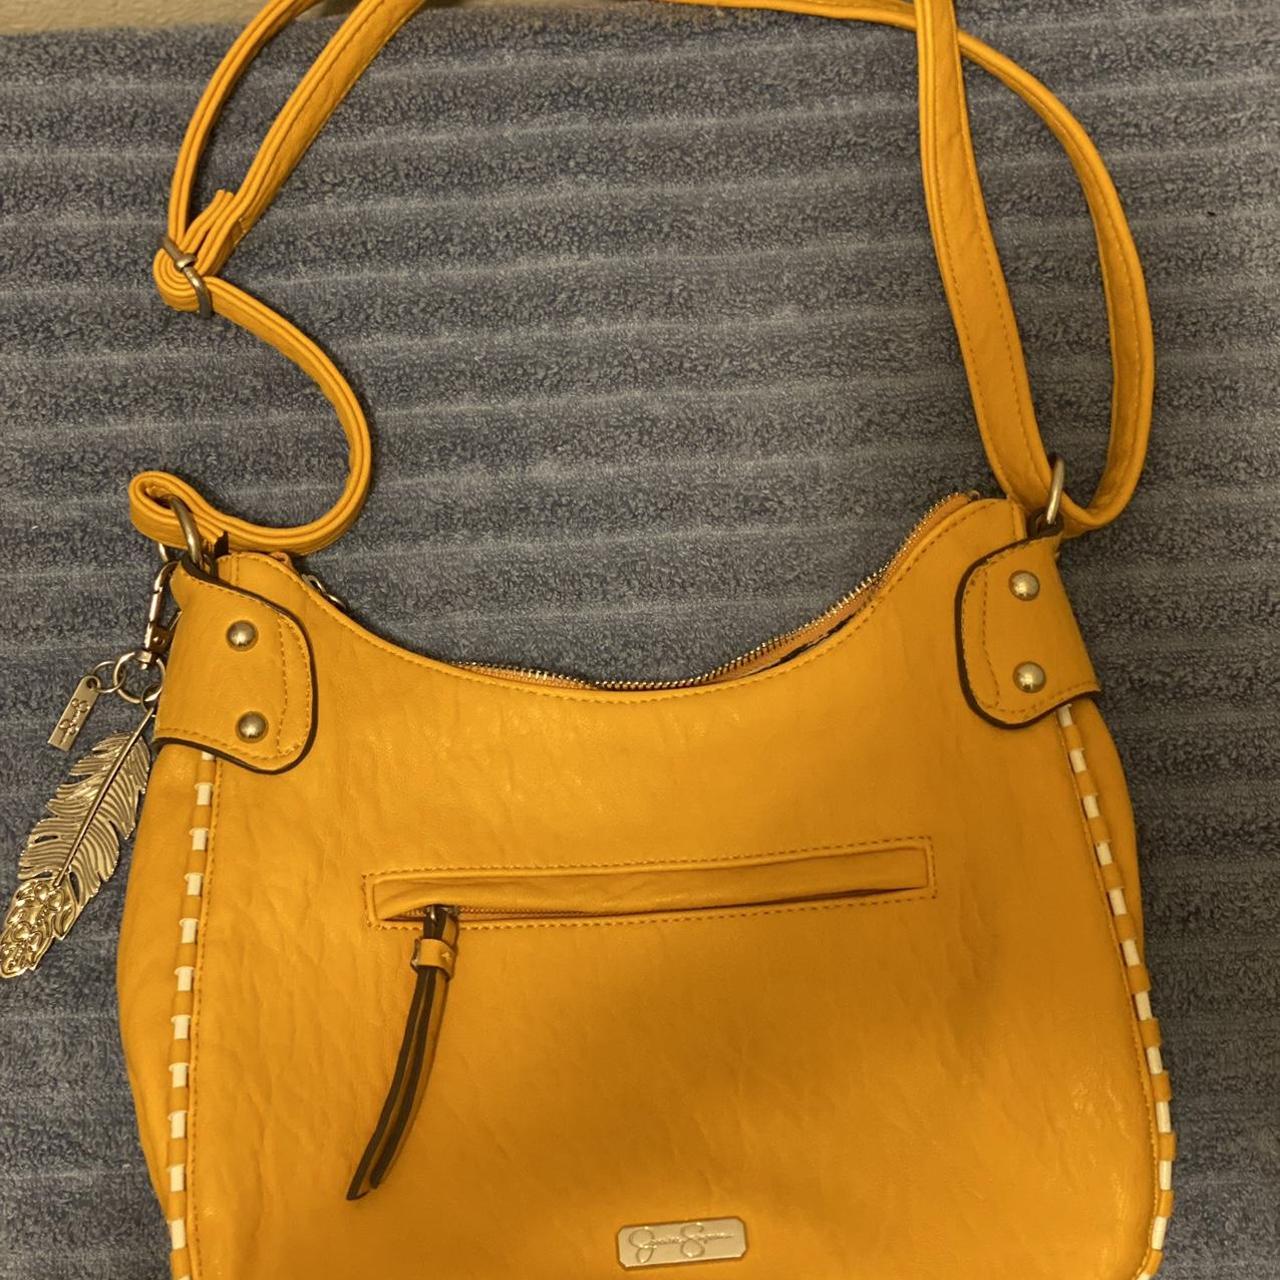 Jessica simpson handbag purse - Gem